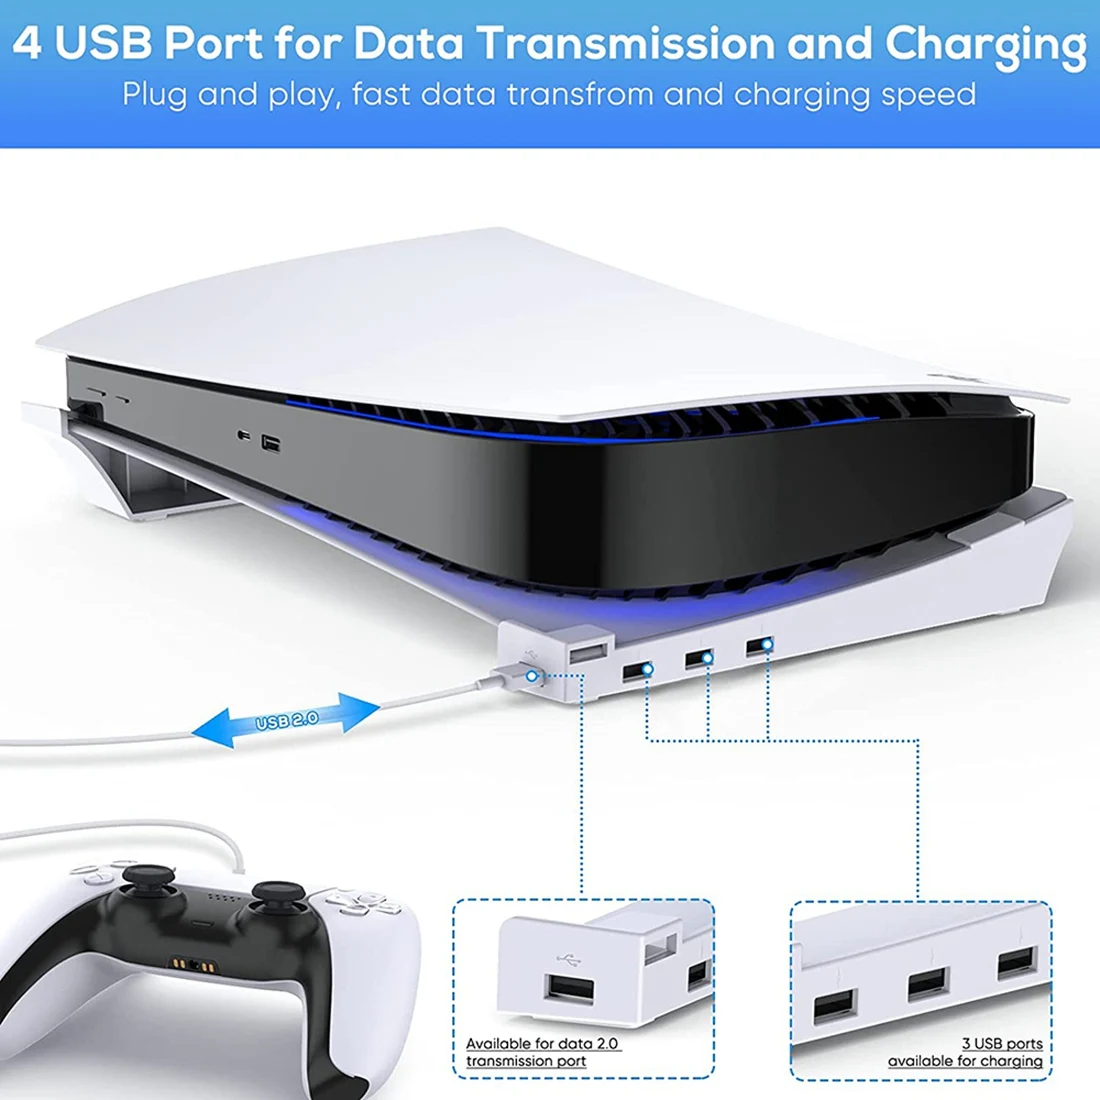 Хоризонтална поставка за PS5 с разширение 4 USB, притежател на конзолата в килера, за Playstation 5 Disc & Digital Edition